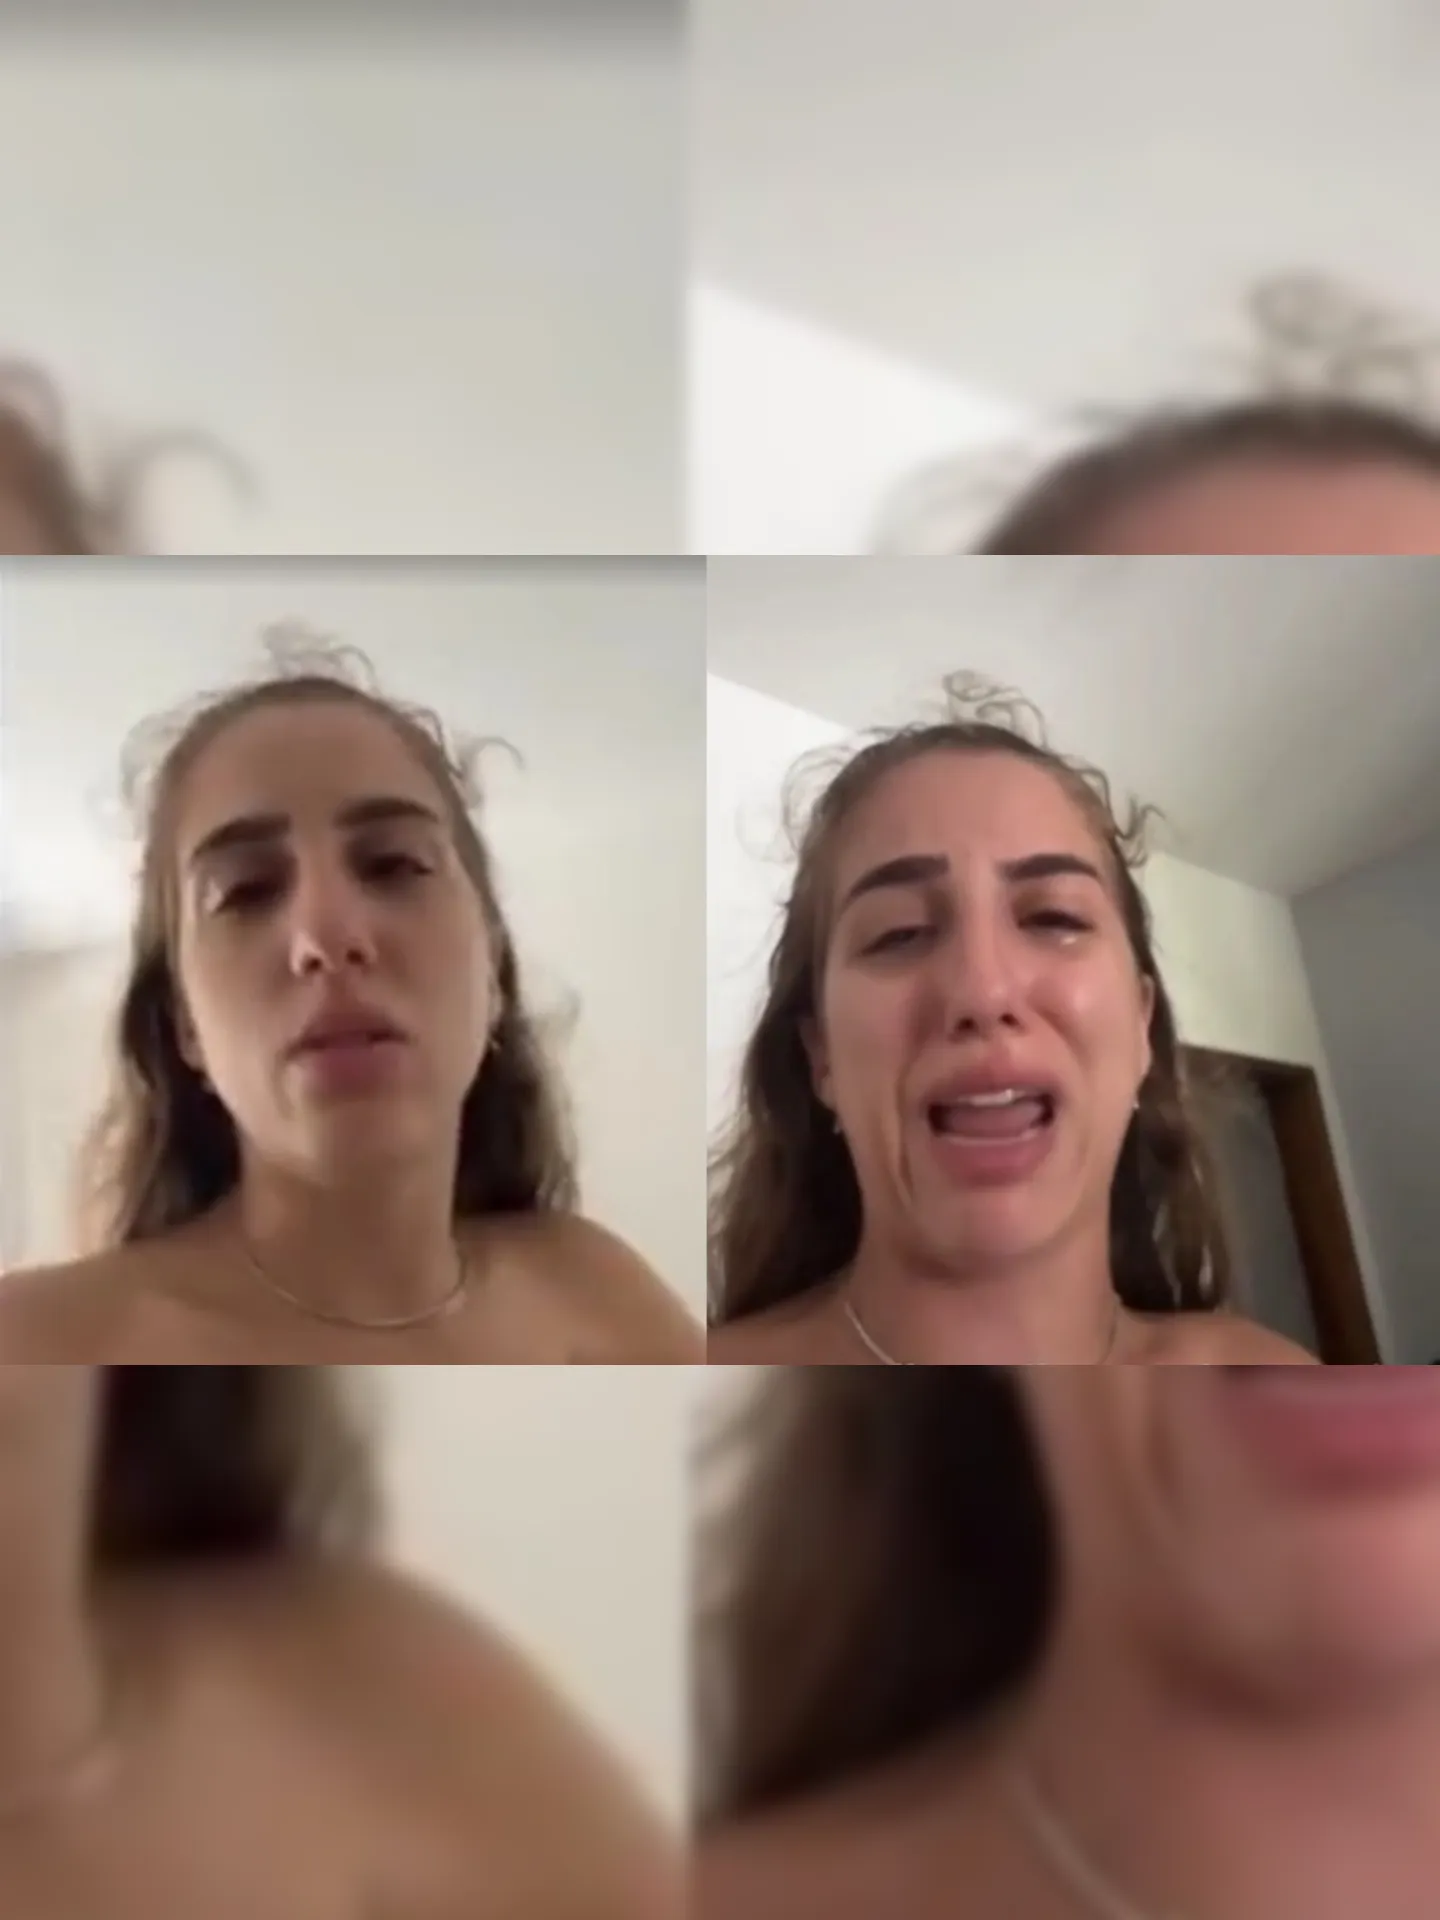 Bruna gravou um vídeo reclamando do descaso